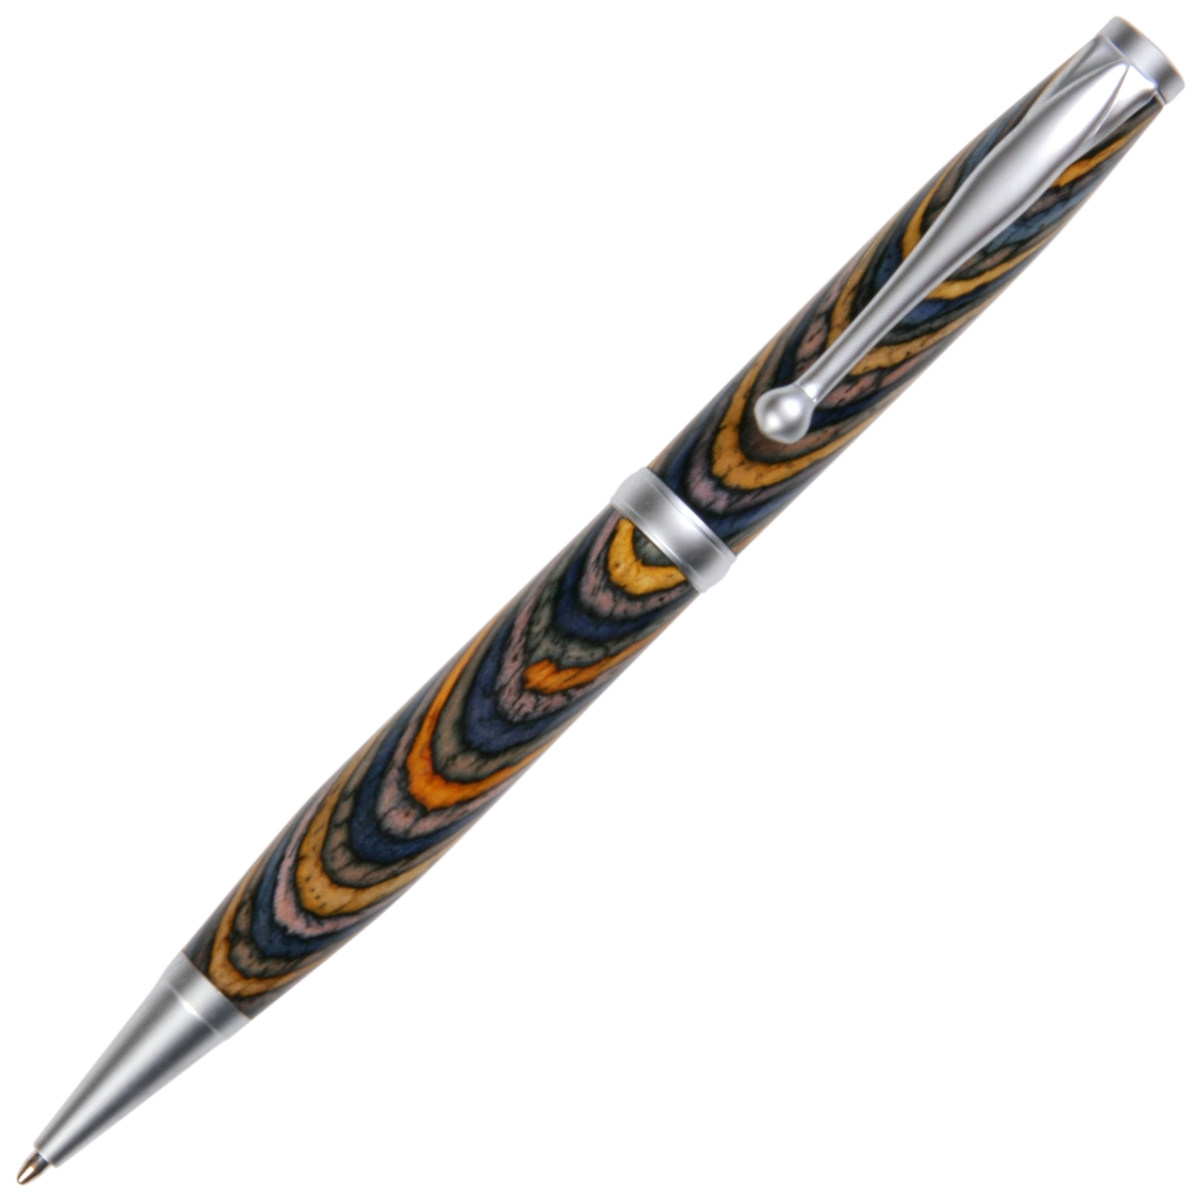 Oceana Color Grain Comfort Twist Pen - Lanier Pens